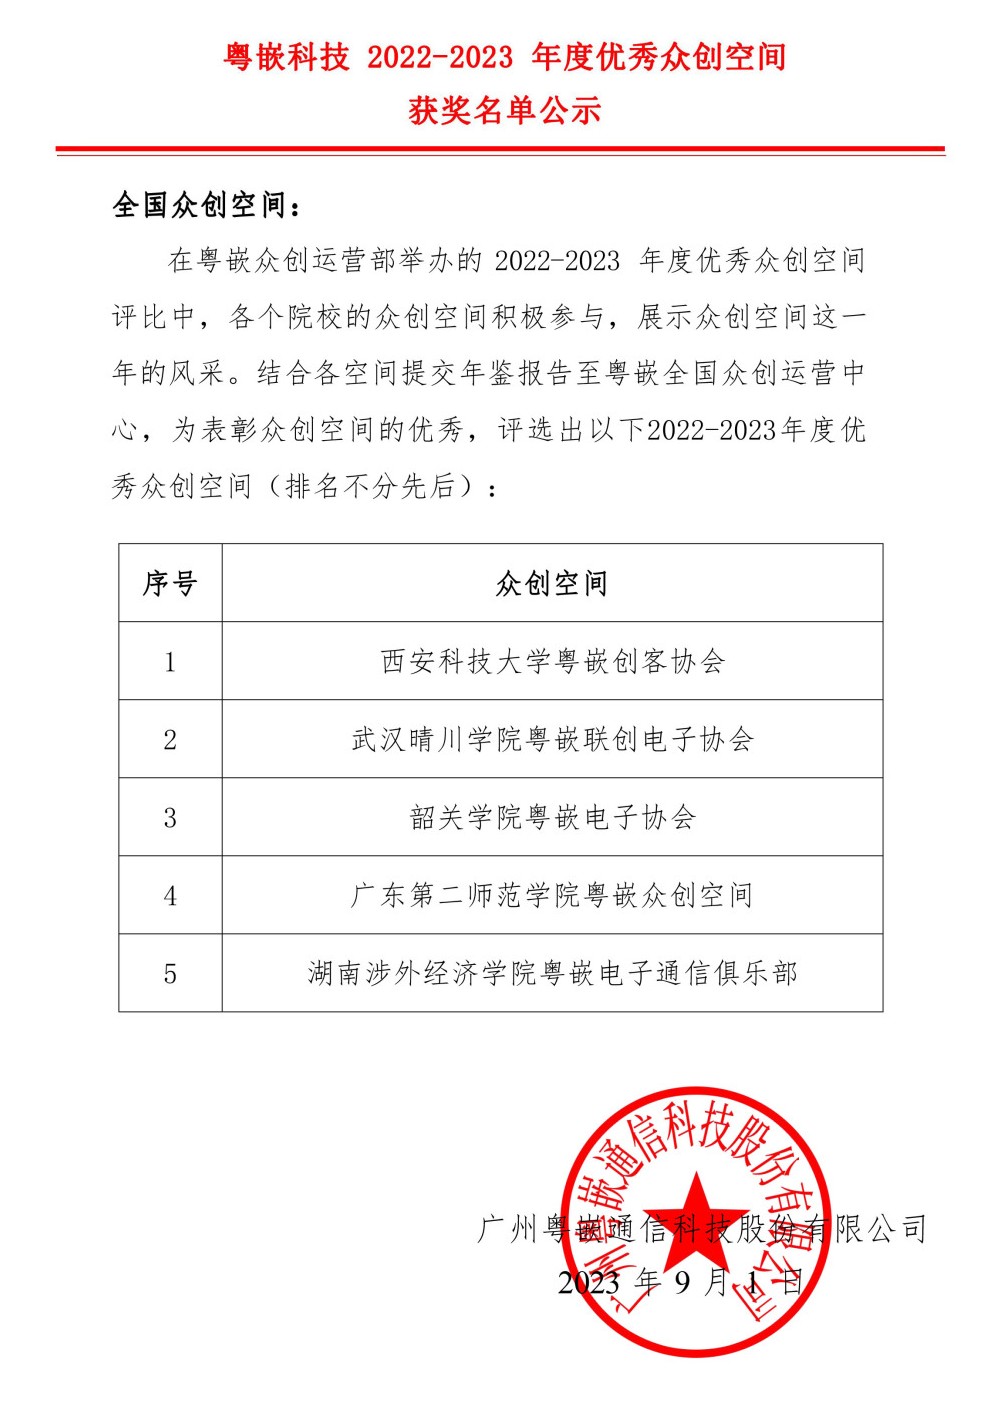 粤嵌科技2022-2023年度优秀众创空间获奖名单公示